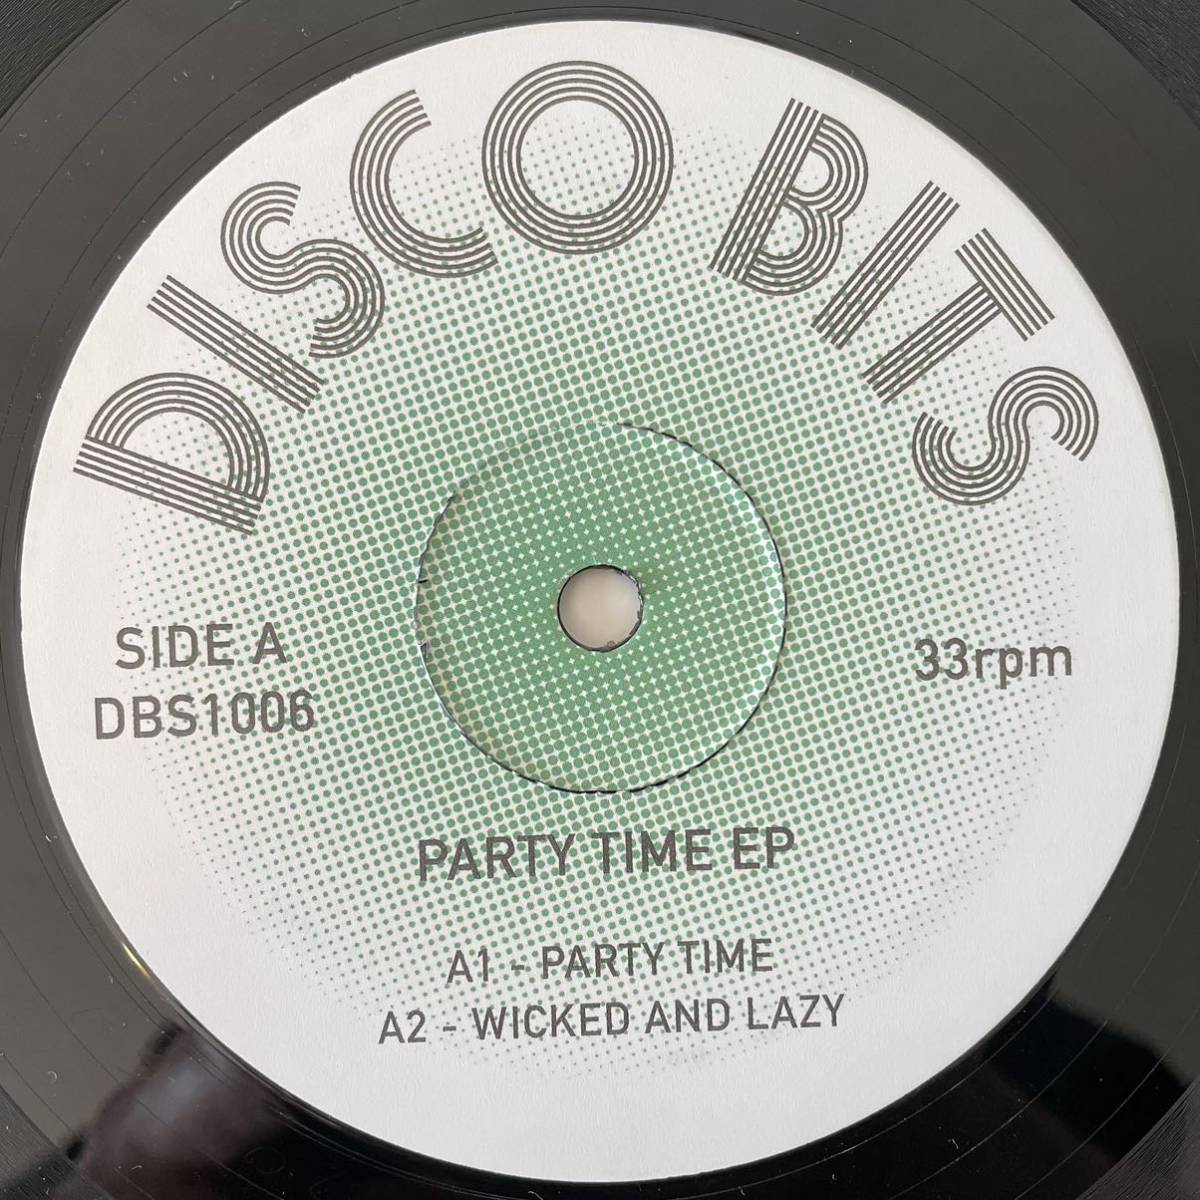 【レコード】Party Time EP / Disco Bits DBS1006 / Class Action「Weekend」、Chaka Khan「Ain't Nobody」他edit収録の画像1